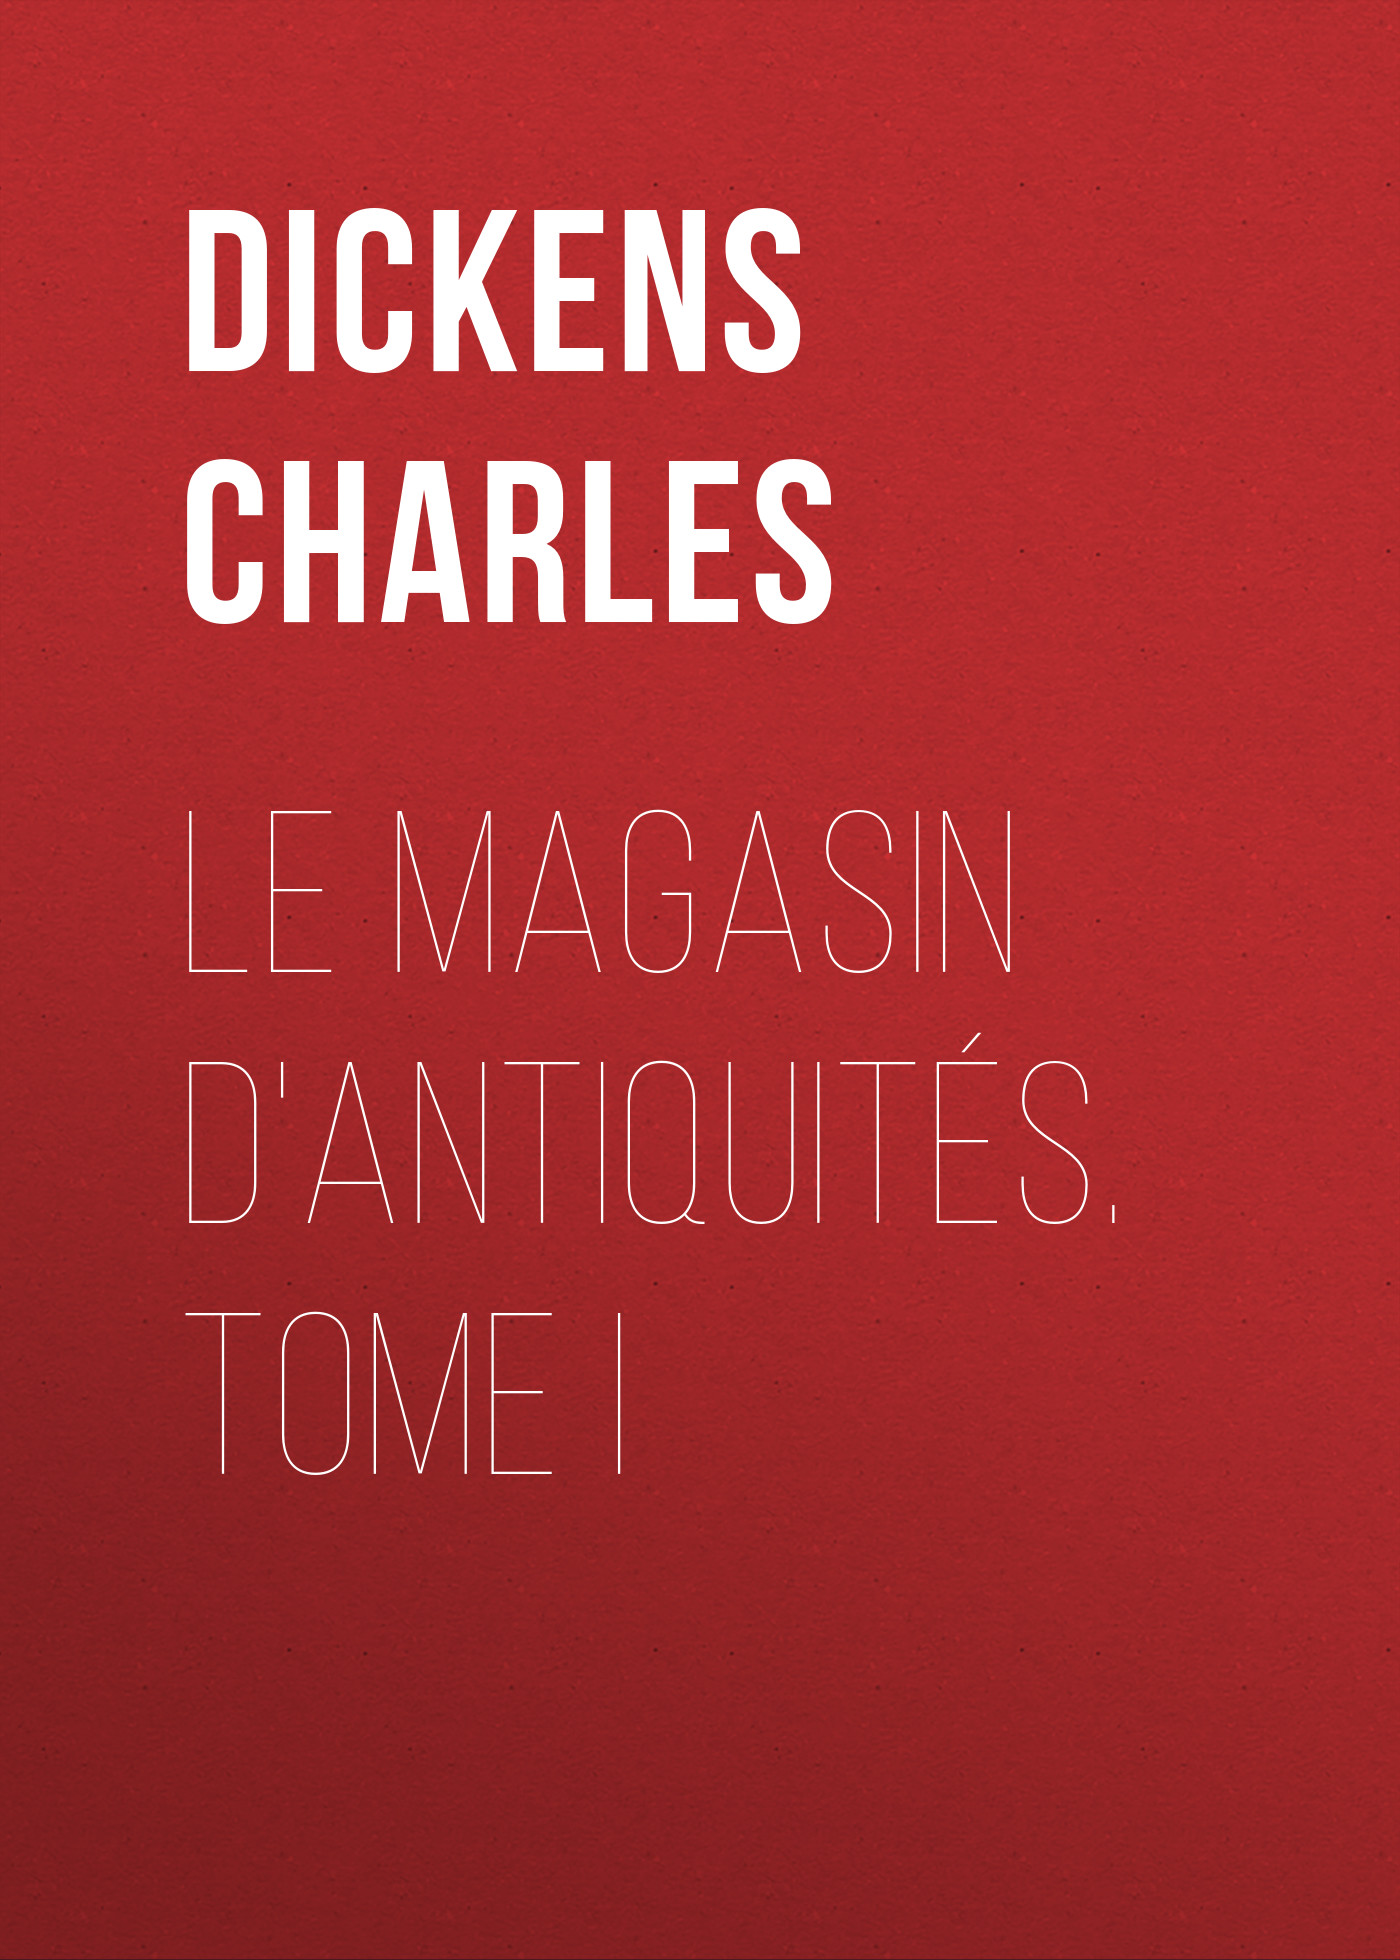 Книга Le magasin d'antiquités. Tome I из серии , созданная Charles Dickens, может относится к жанру Зарубежная старинная литература, Зарубежная классика. Стоимость электронной книги Le magasin d'antiquités. Tome I с идентификатором 25092892 составляет 0 руб.